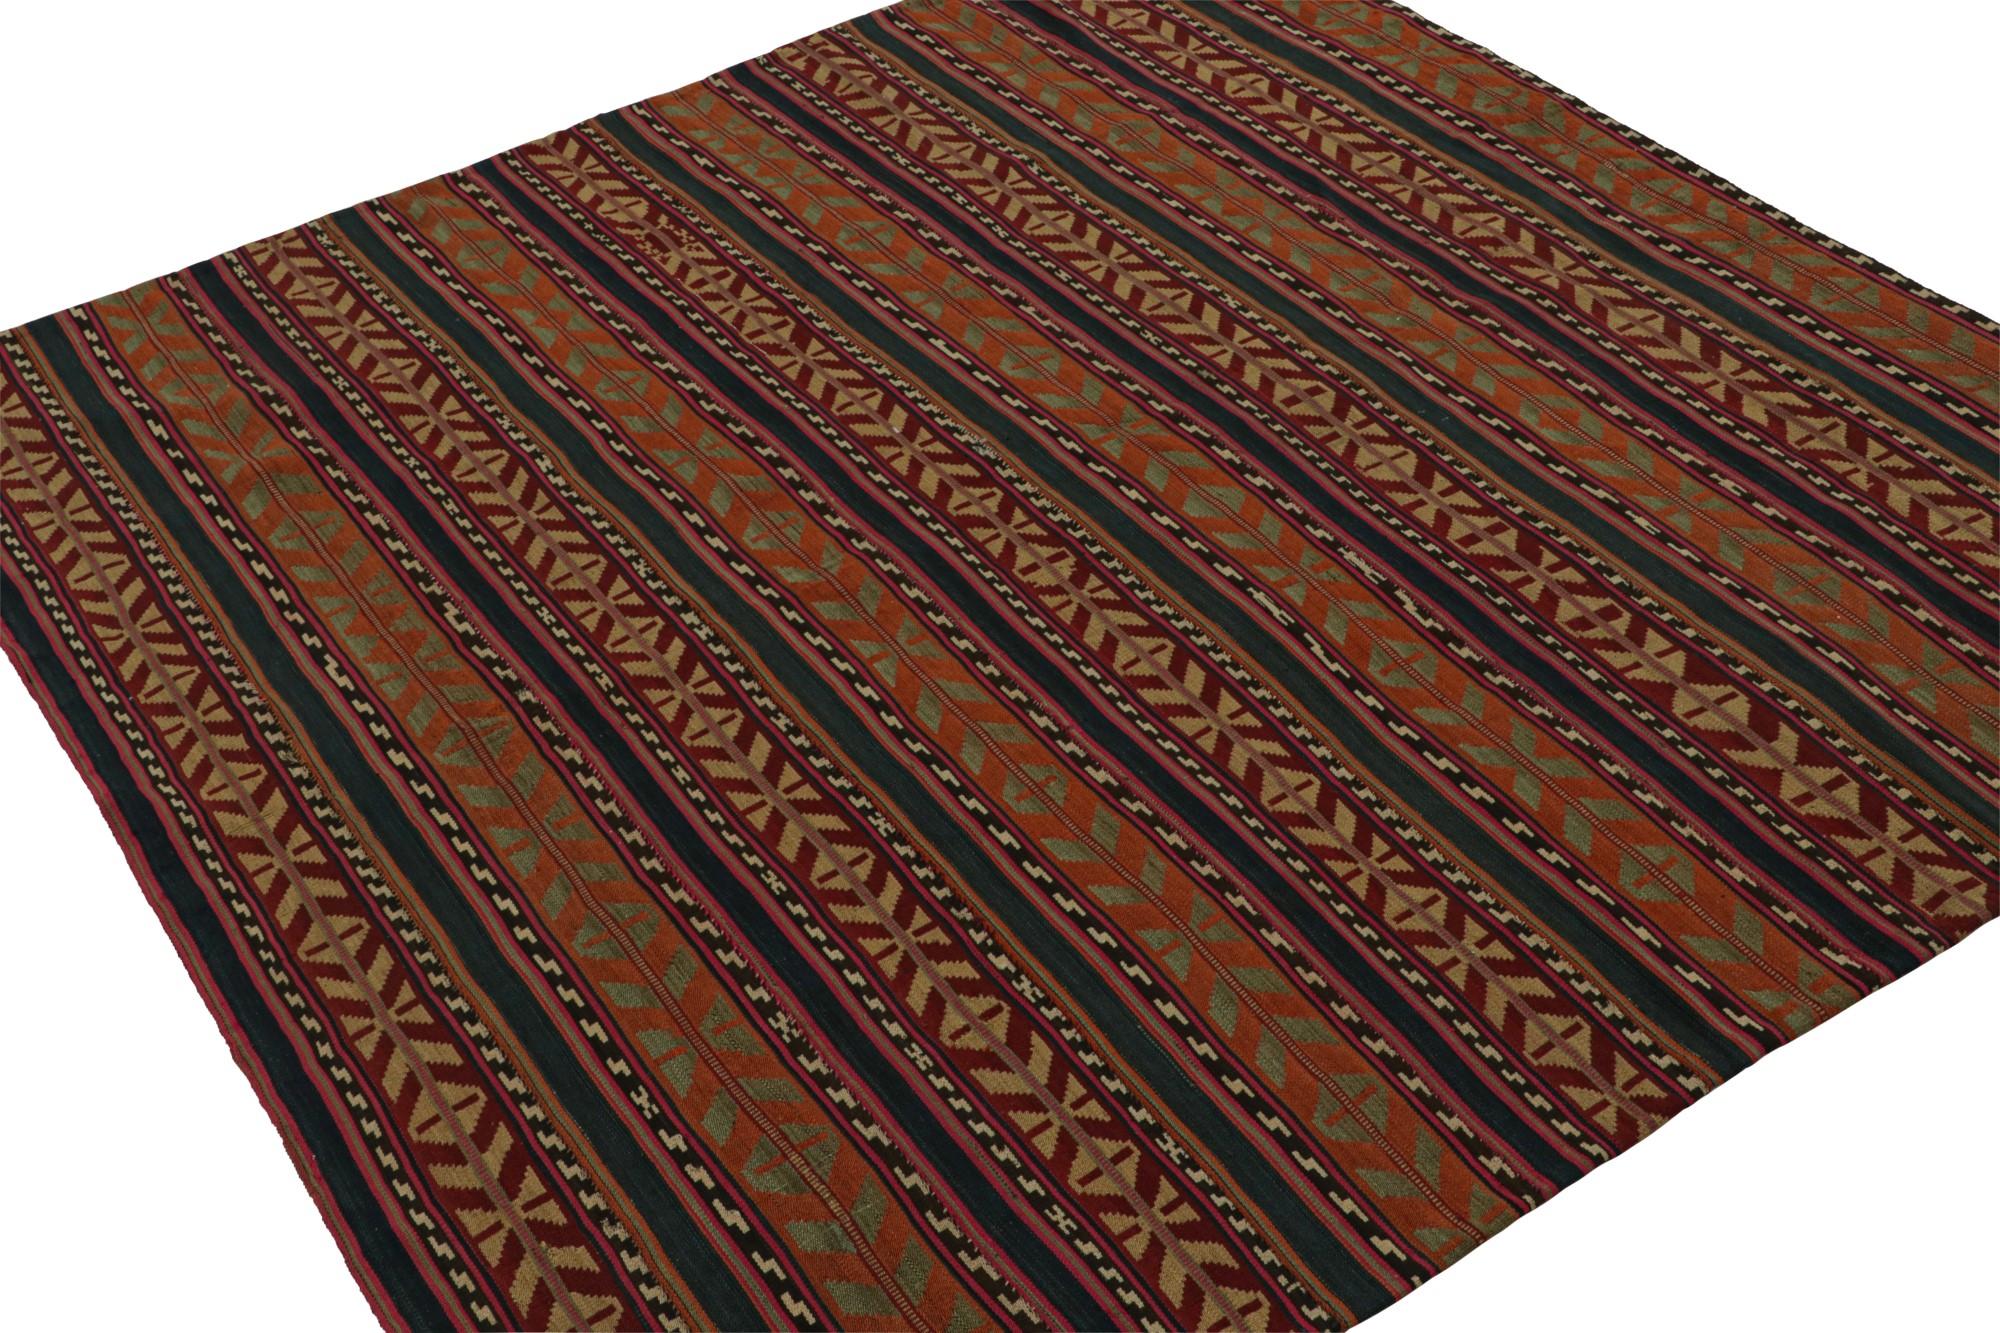 Ce Kilim tribal vintage 6x6 est une nouvelle addition aux collections de Rug & Kilim du milieu du siècle. Tissé à la main en laine, il provient d'Afghanistan vers 1950-1960.

Sur le Design : 

Ce tissage plat carré présente des motifs géométriques